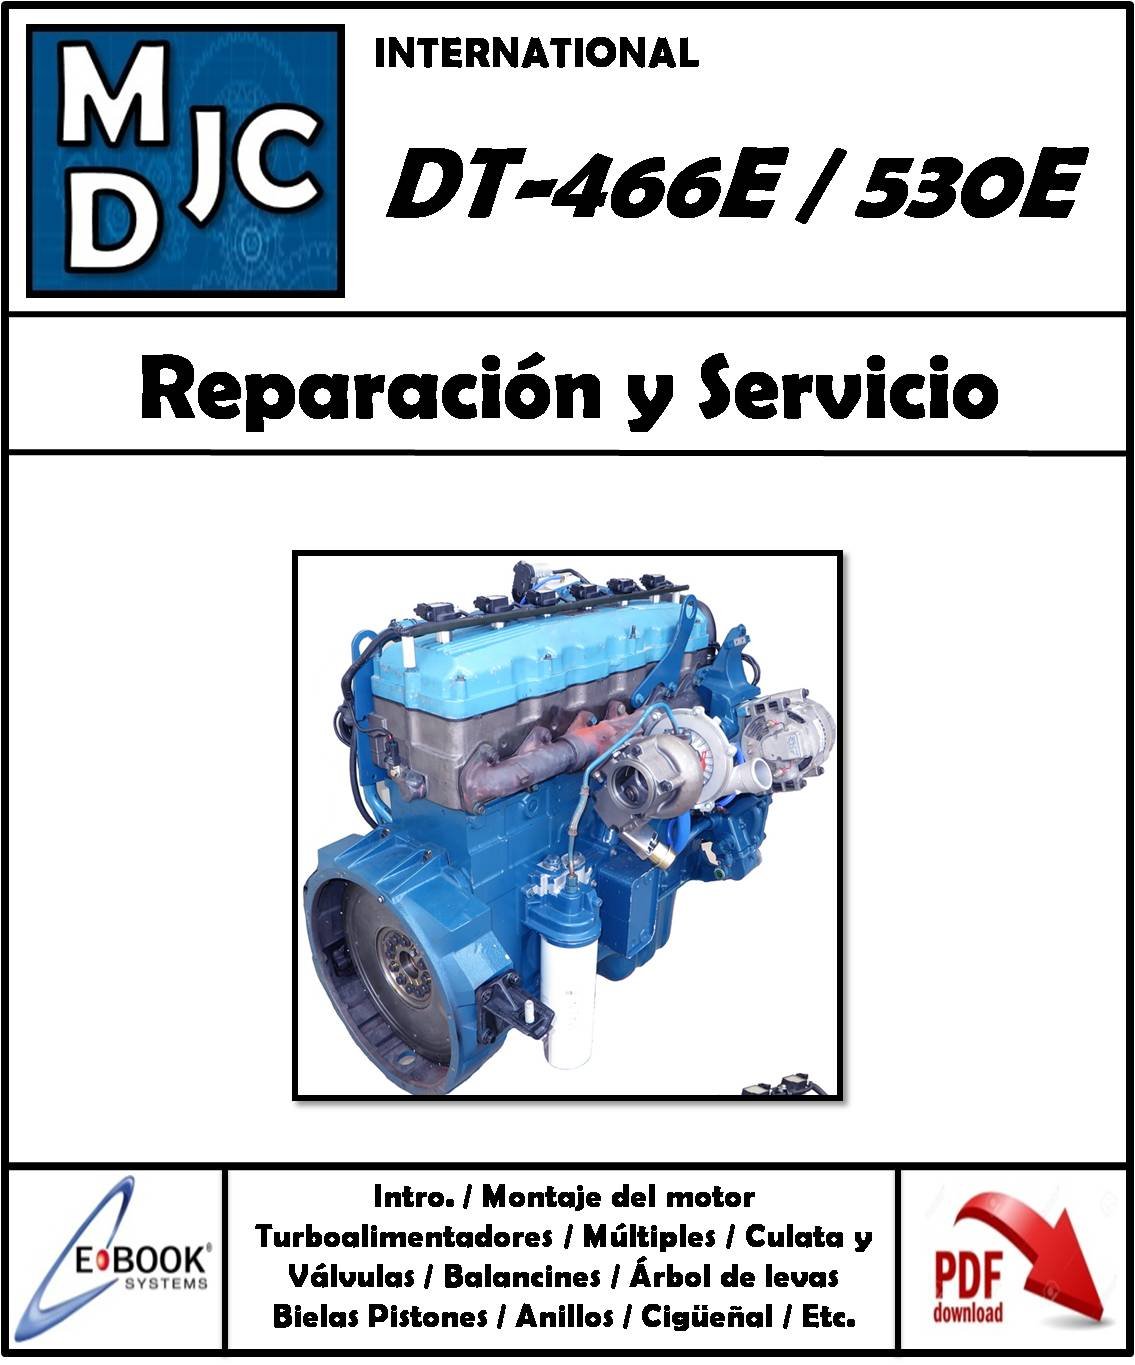 International DT-466E / 530E